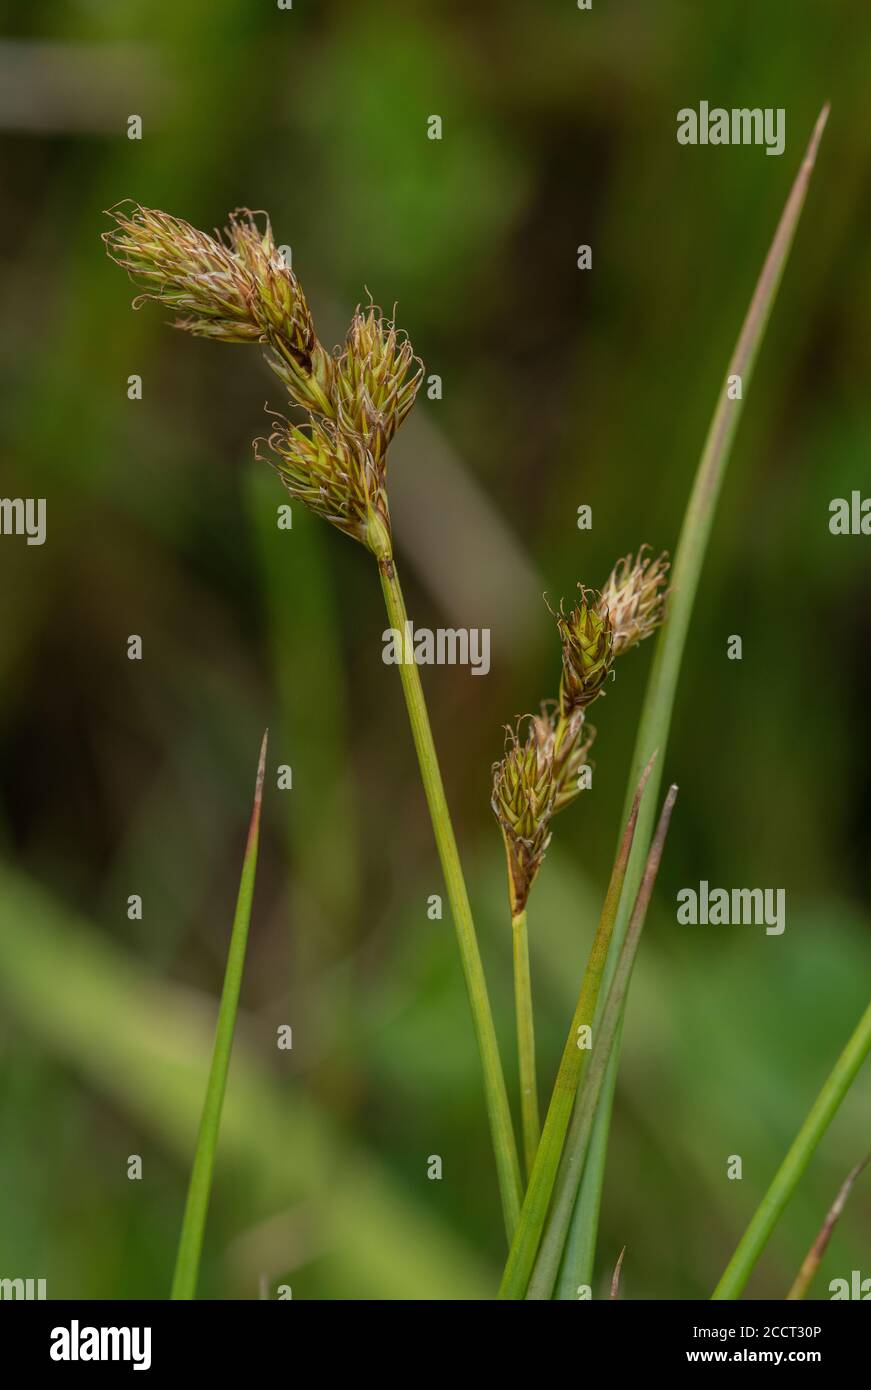 Oval sedge, Carex leporina, in flower in wet floodplain meadow. Stock Photo